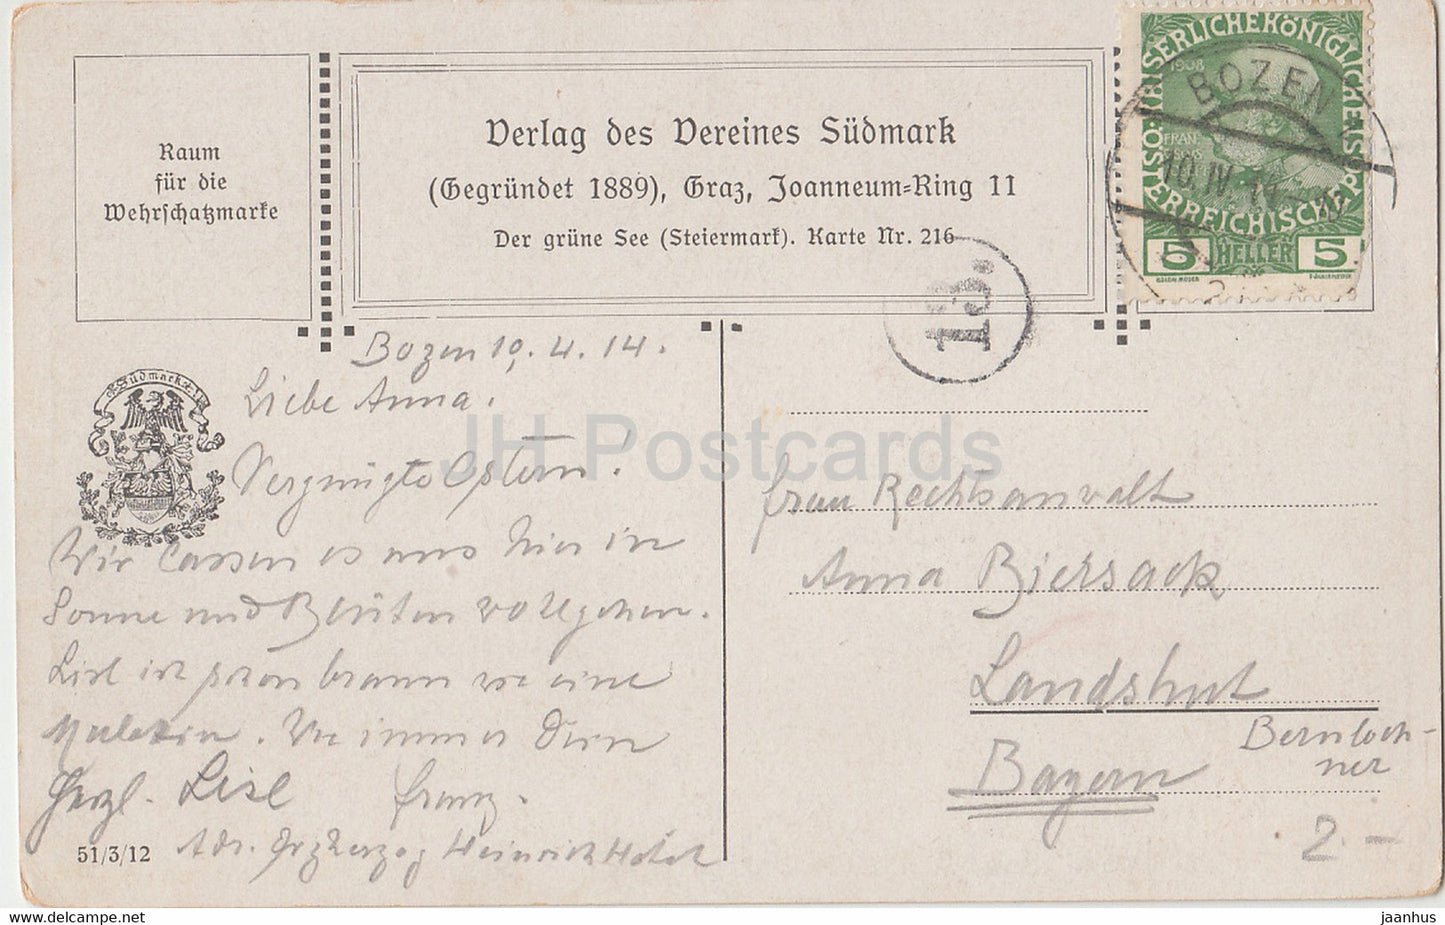 Der Grune See - Steiermark - illustration - Vereines Sudmark - 216 - carte postale ancienne - 1914 - Autriche - utilisé